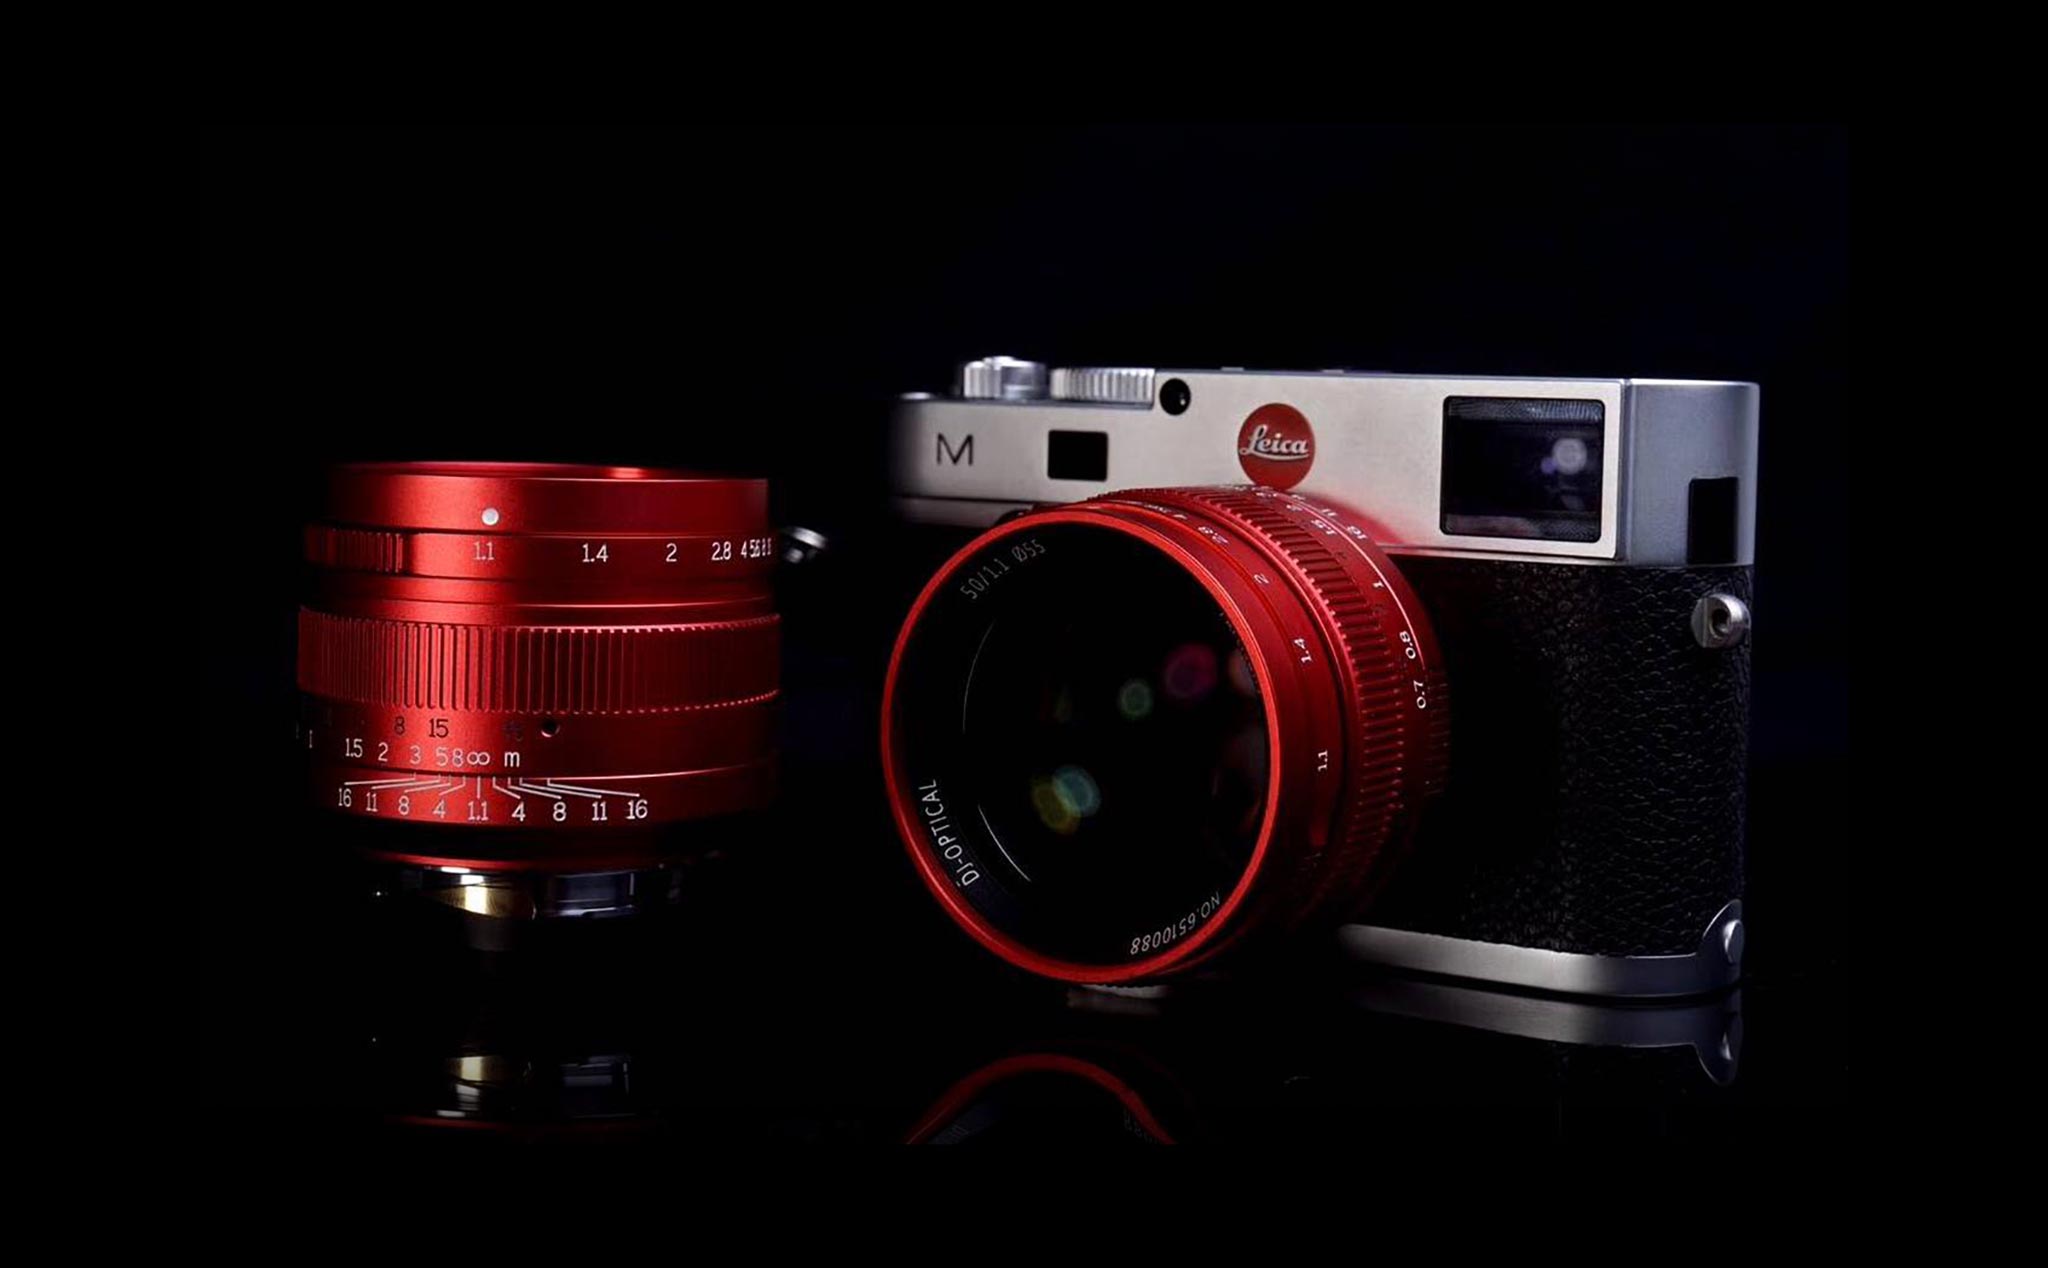 Đây là ống kính 7Artisans 50mm f/1.1 phiên bản đỏ đặc biệt “Red Dragon” dành cho Leica M-mount